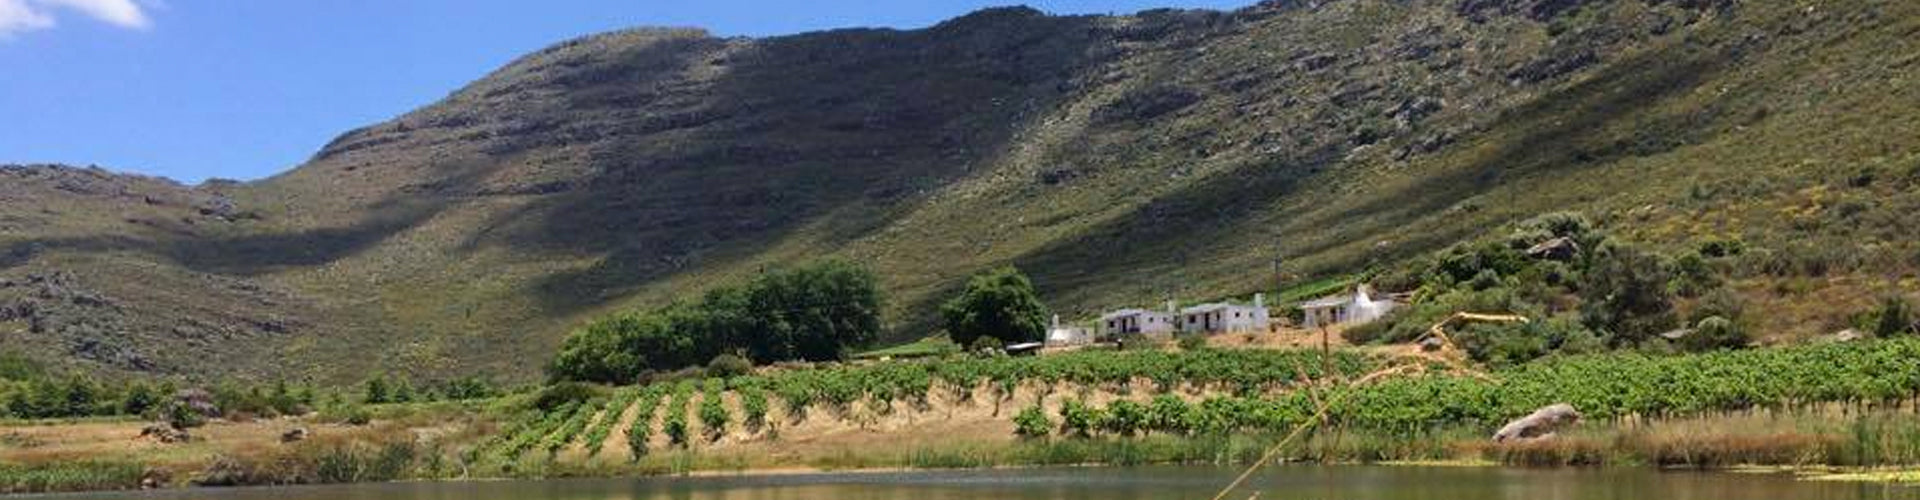 Tierhoek Farm & Winery Buildings in Piekenierskloof, South Africa